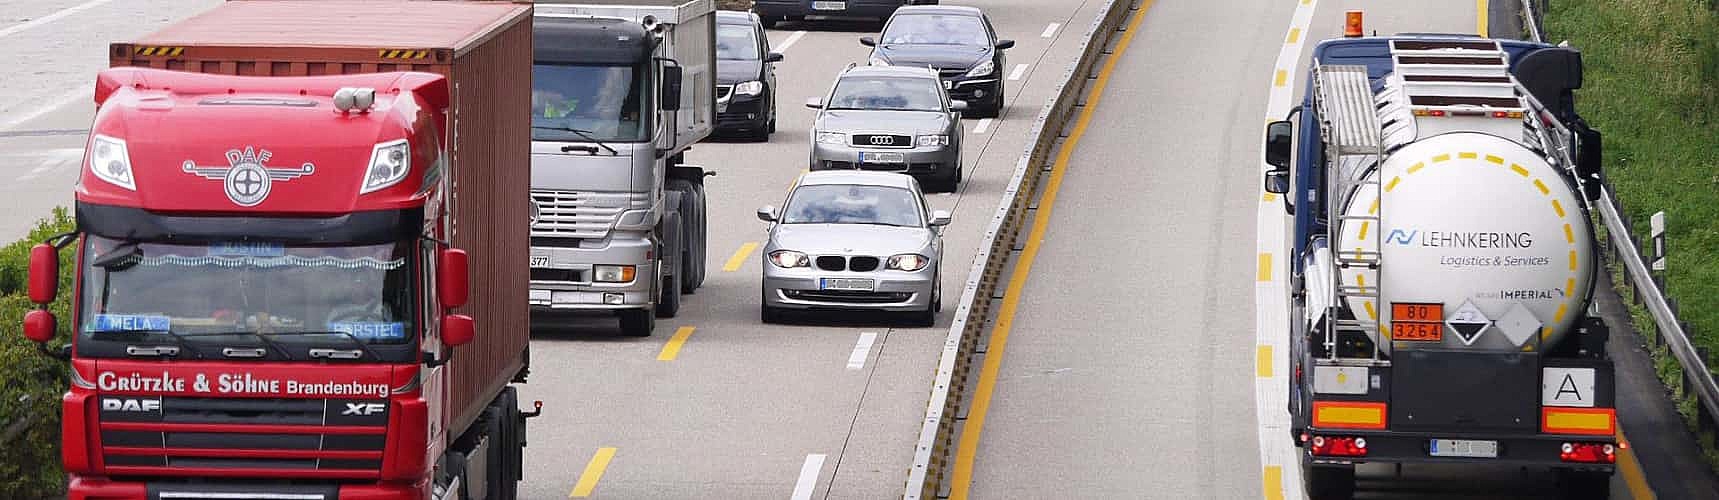 ciot transporte: veículos transitam em rodovia movimentada